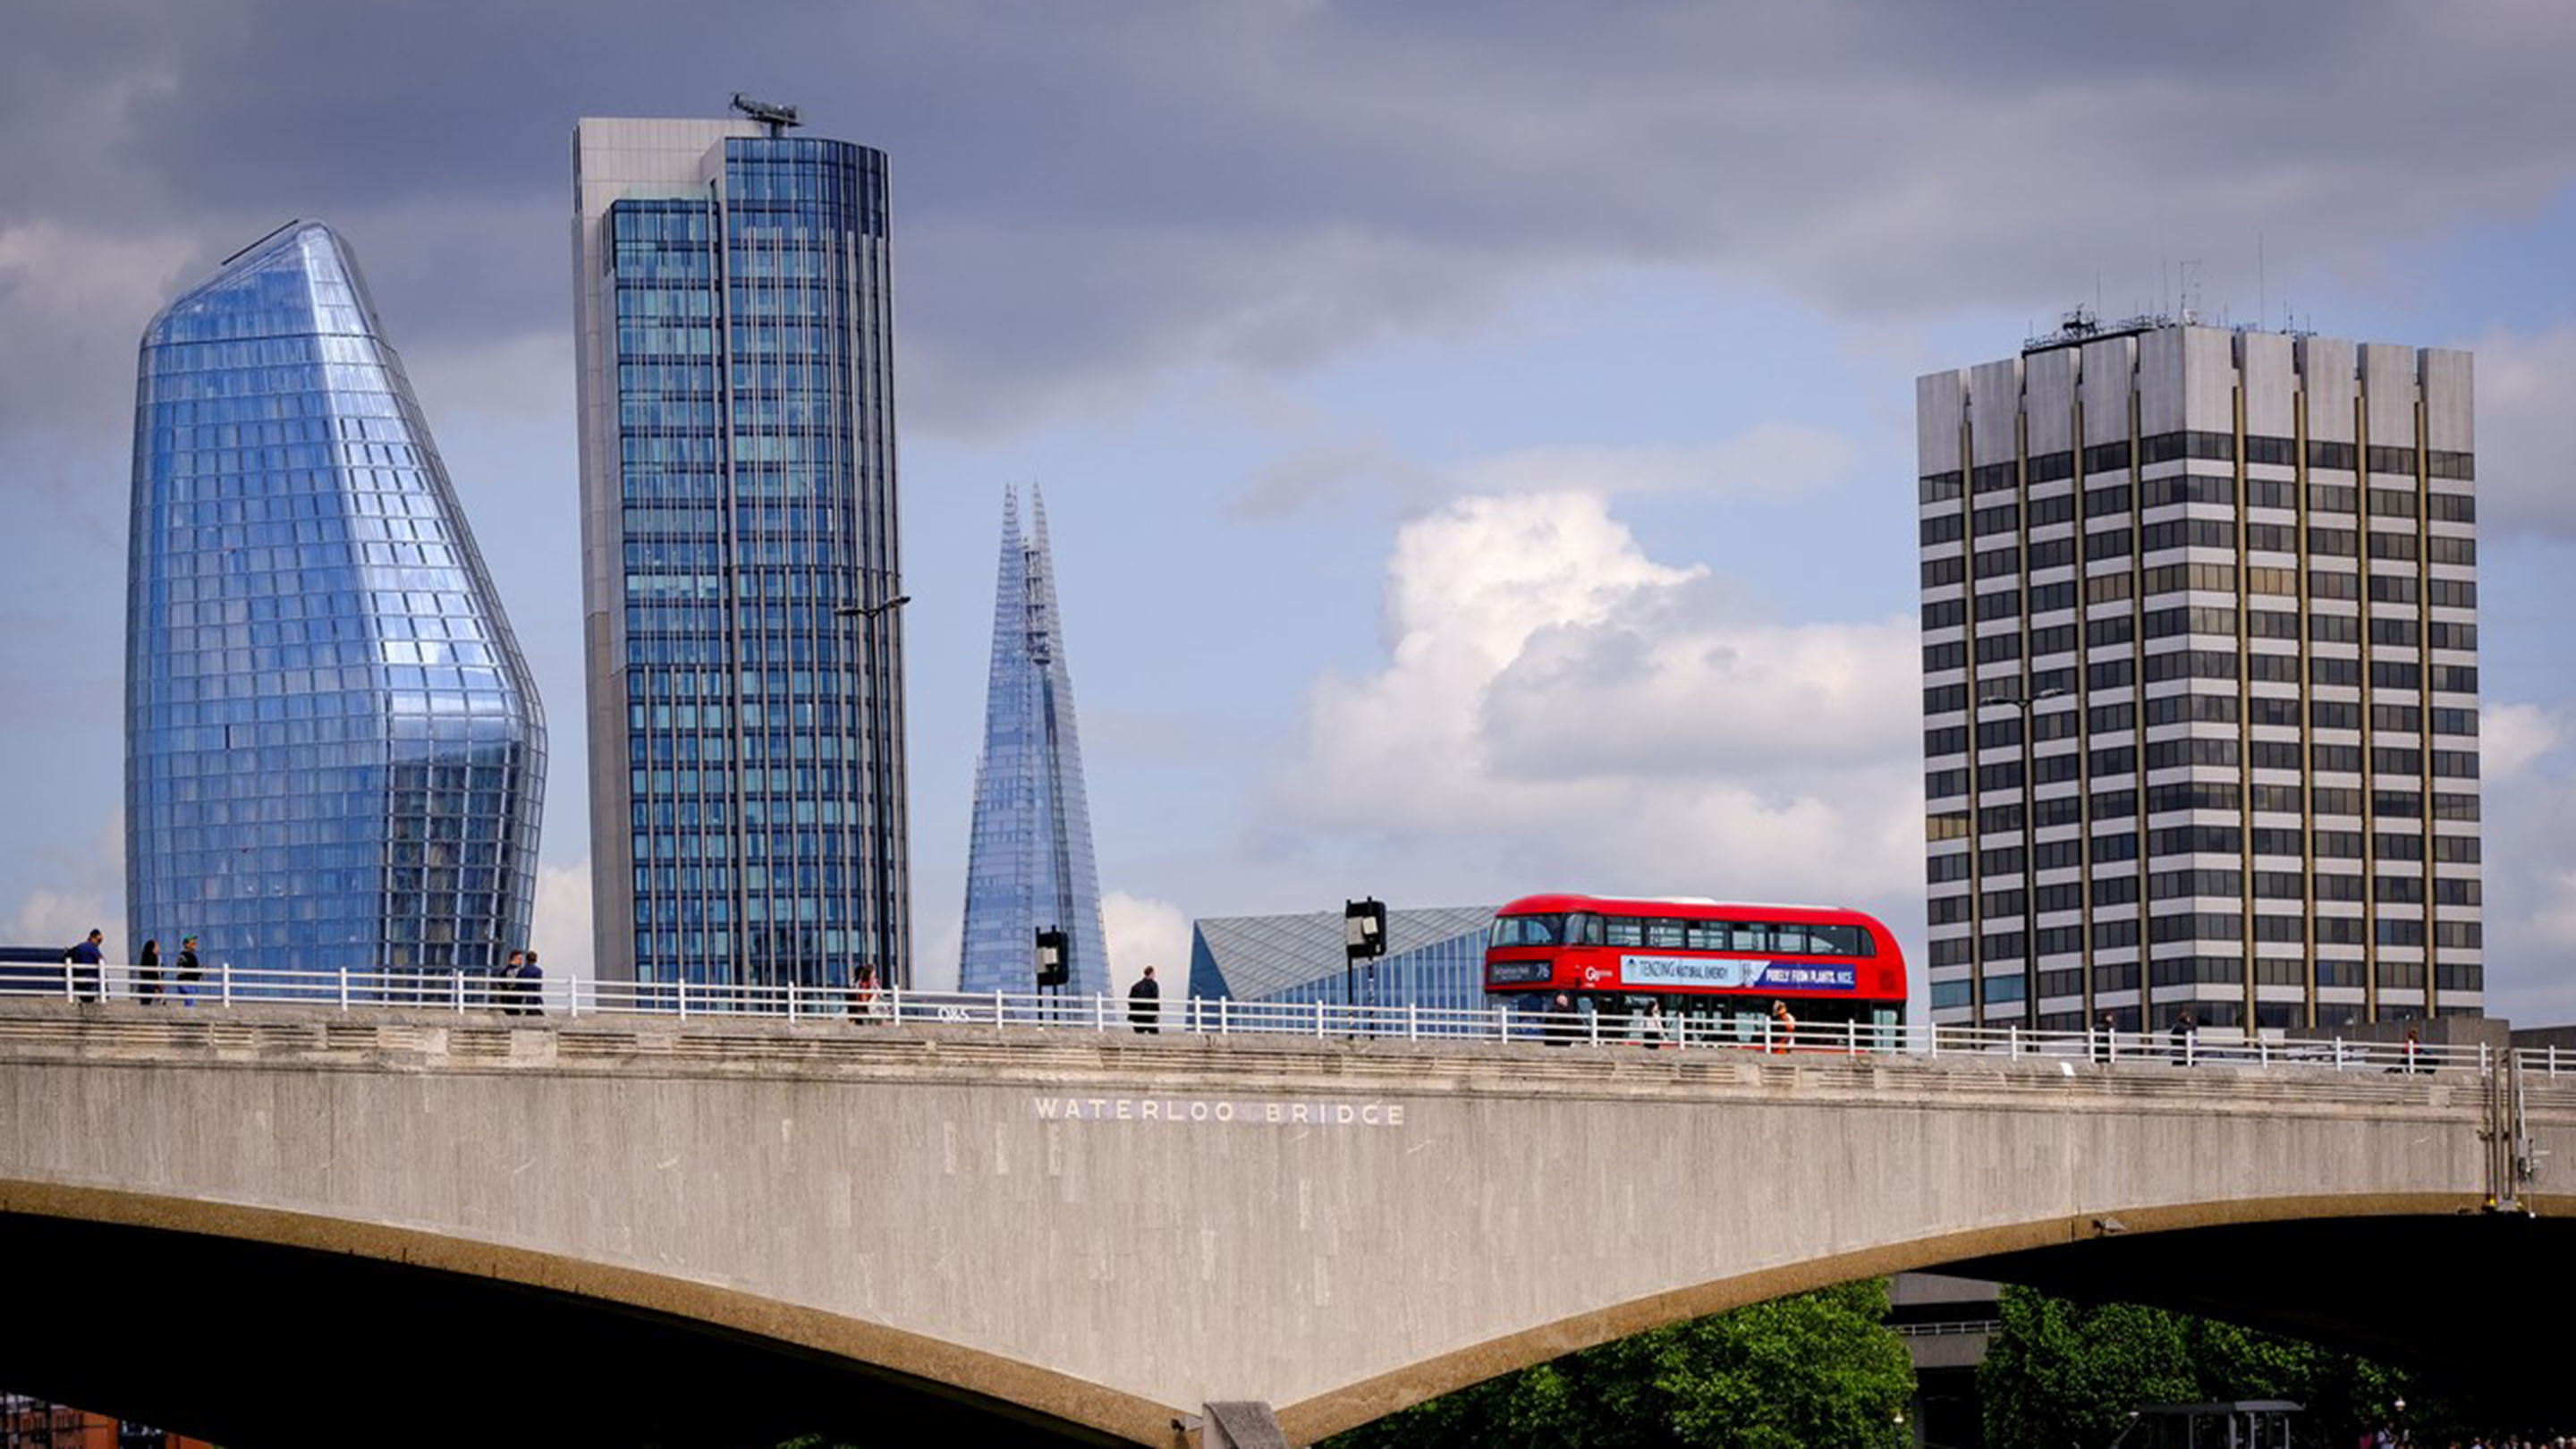 Red London bus crossing Waterloo Bridge